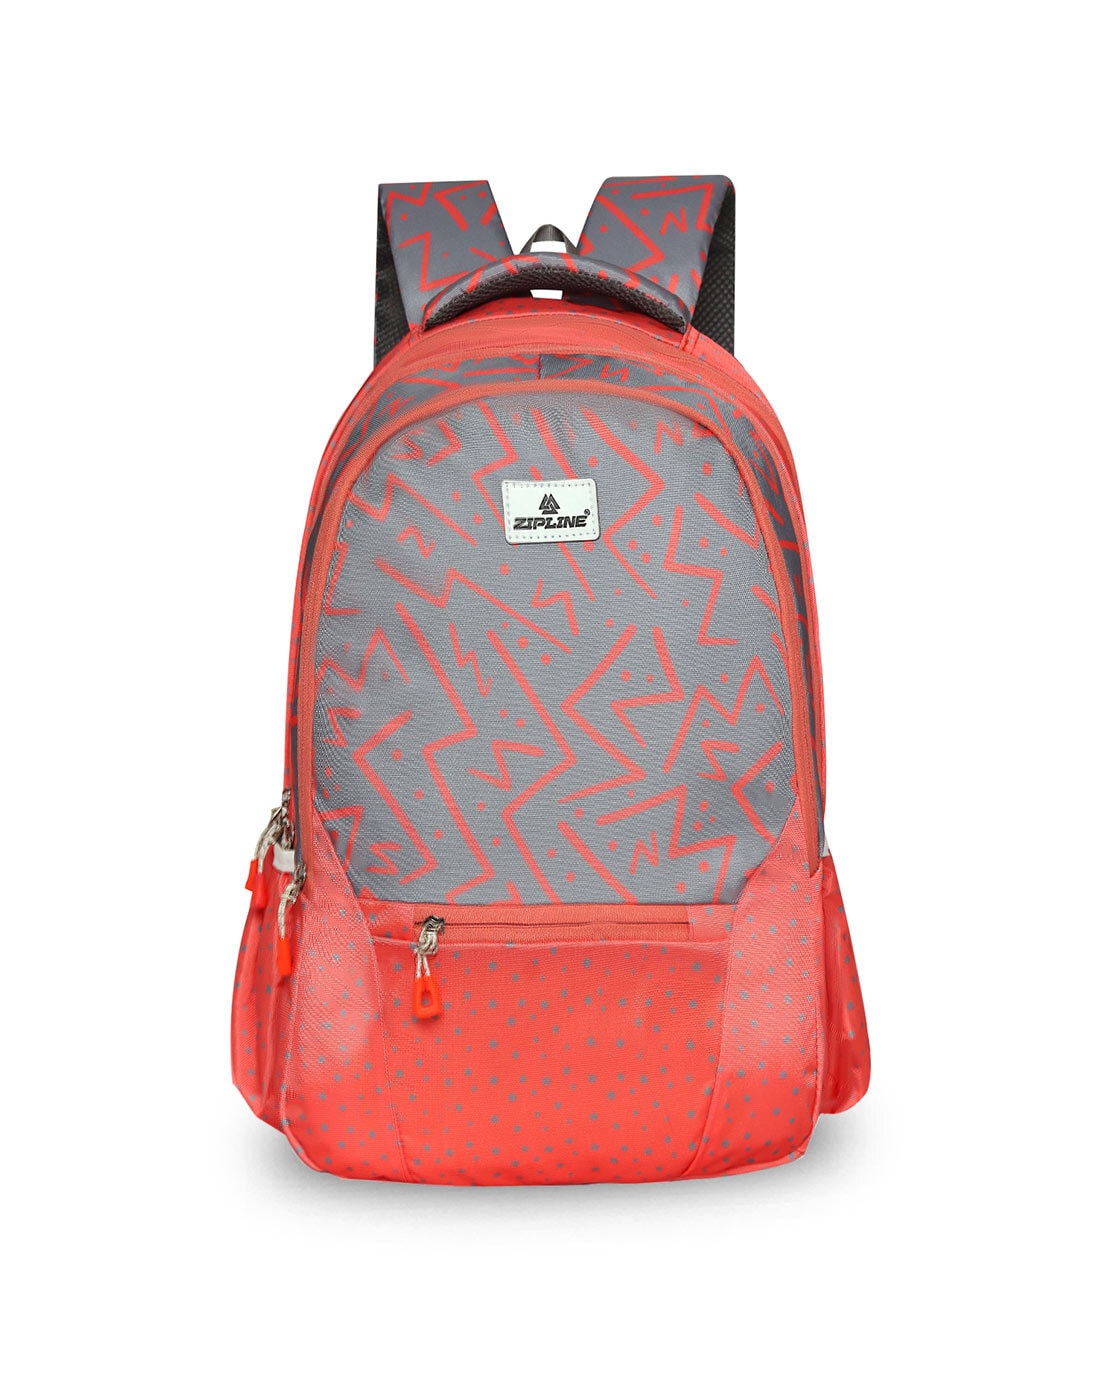 Zephyr Sling Backpack Handbag - Pilar Boutique